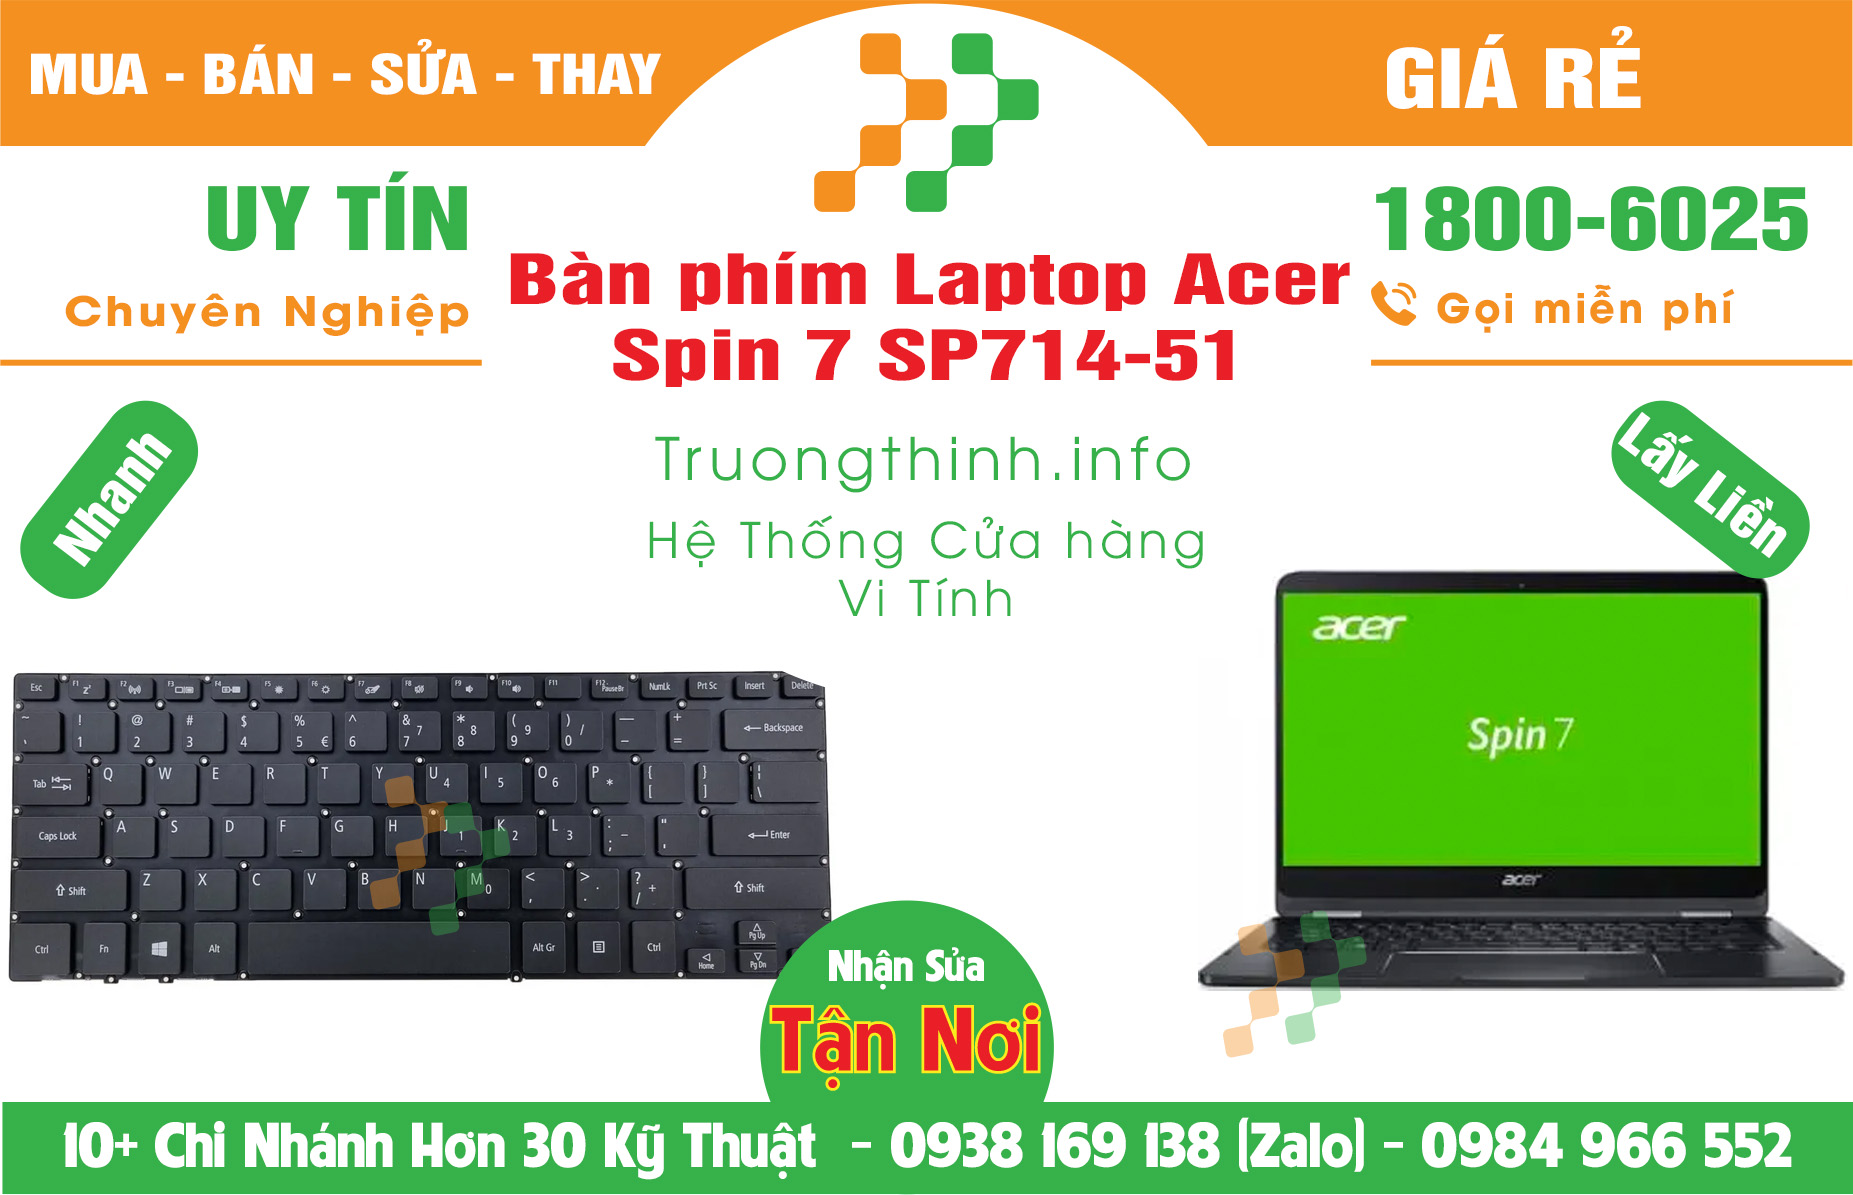 Mua bán Bàn Phím Laptop Acer Spin 7 SP714-51 Giá Rẻ | Vinh Tính Trường Thịnh Giá Rẻ